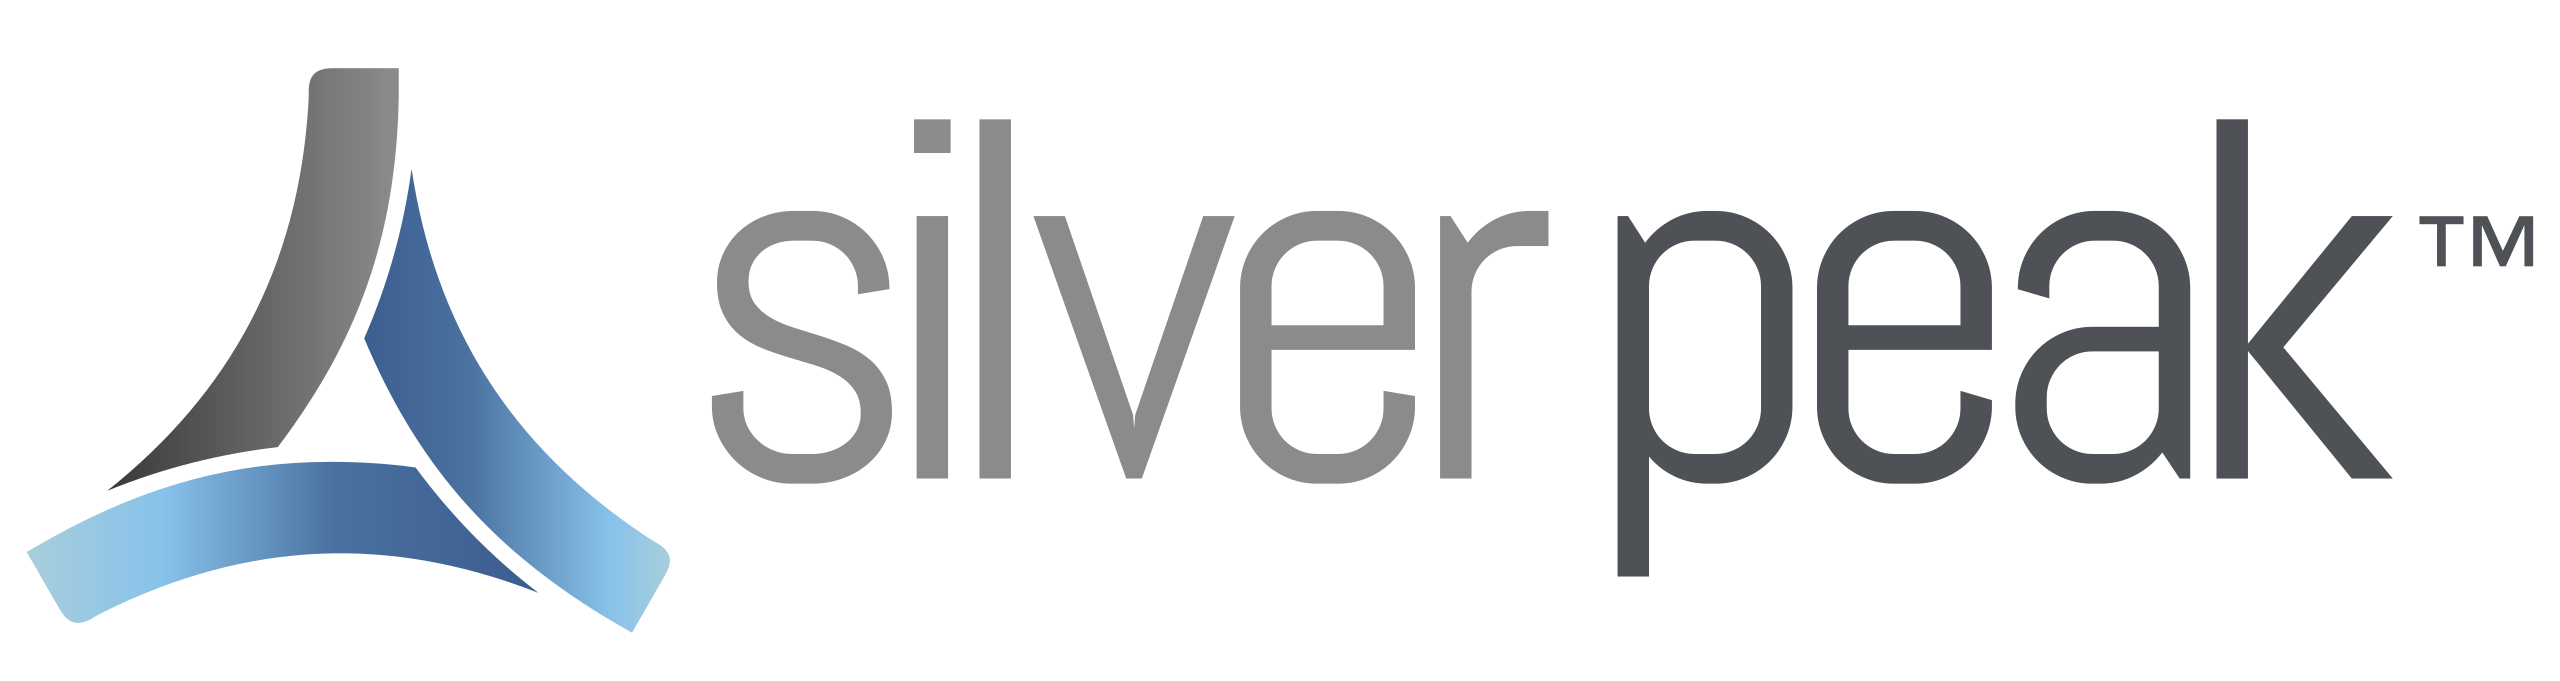 2560px-Silver_Peak_logo